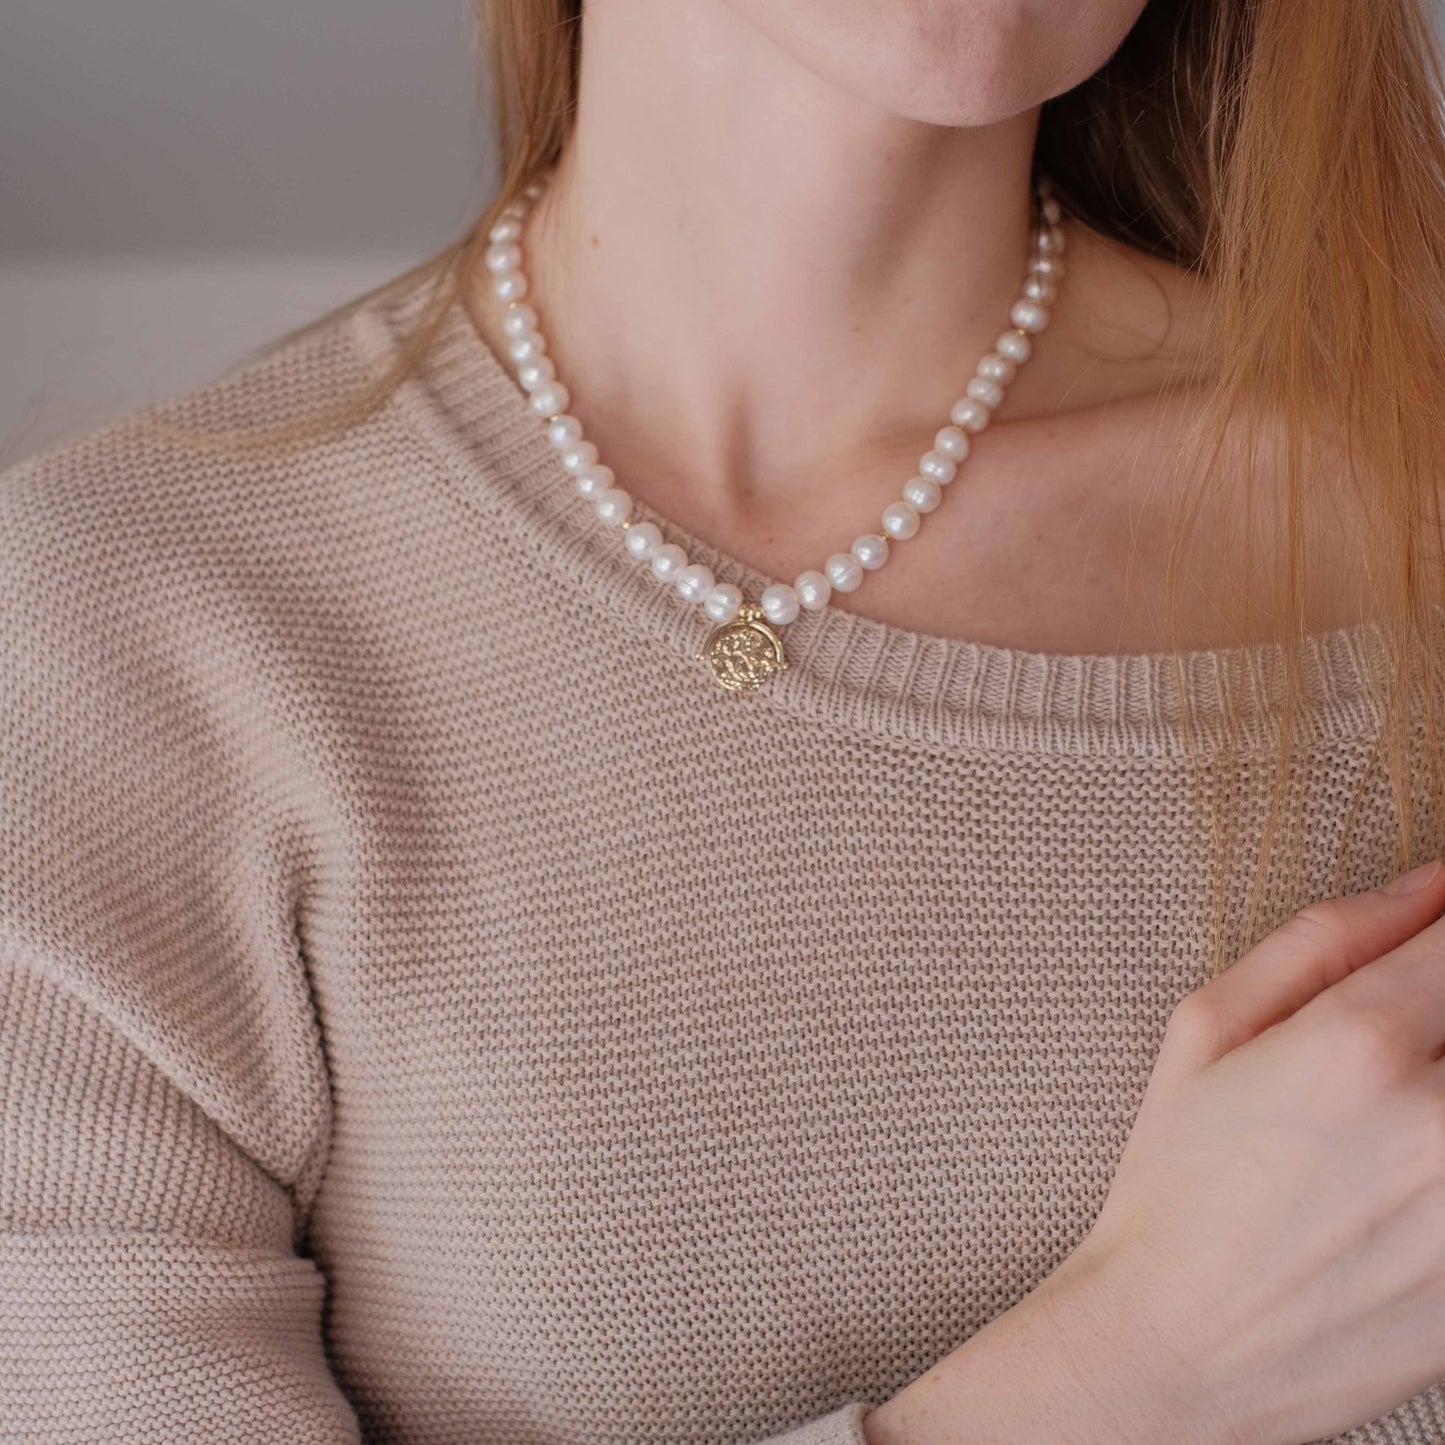 Natūralių perlų vėrinys su auksu dengtomis detalėmis "Mia"